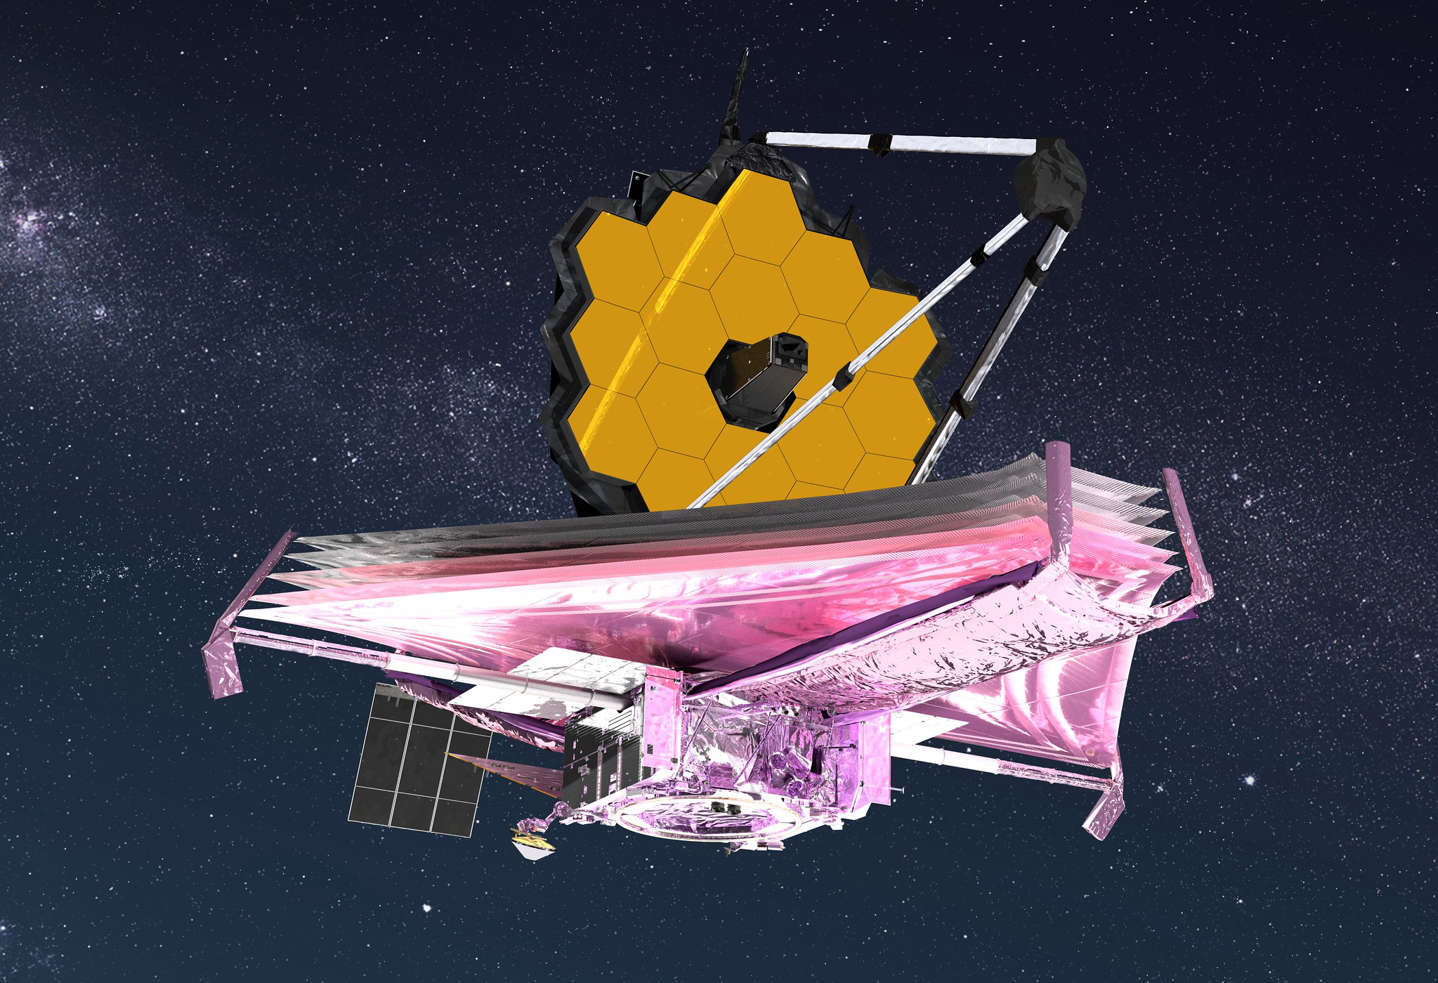 지구로부터 160만km 떨어진 지점에 이르러 제대로 배치를 끝내면 제임스 웹 우주망원경은 이런 모습으로 우주 관측의 임무를 하게 된다. NASA 제공